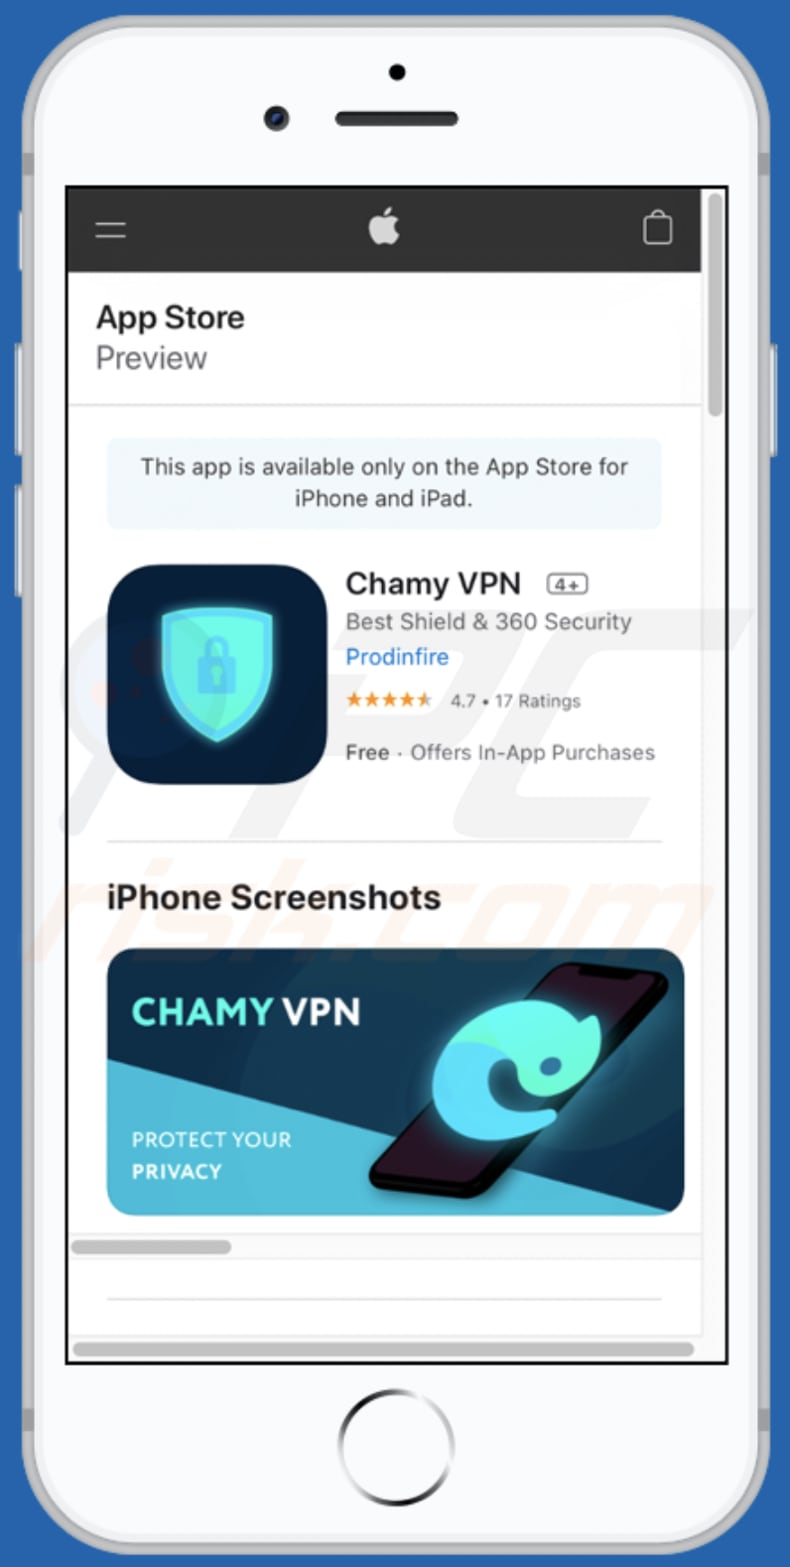 reander.net pop-up scam app promoted via second variant